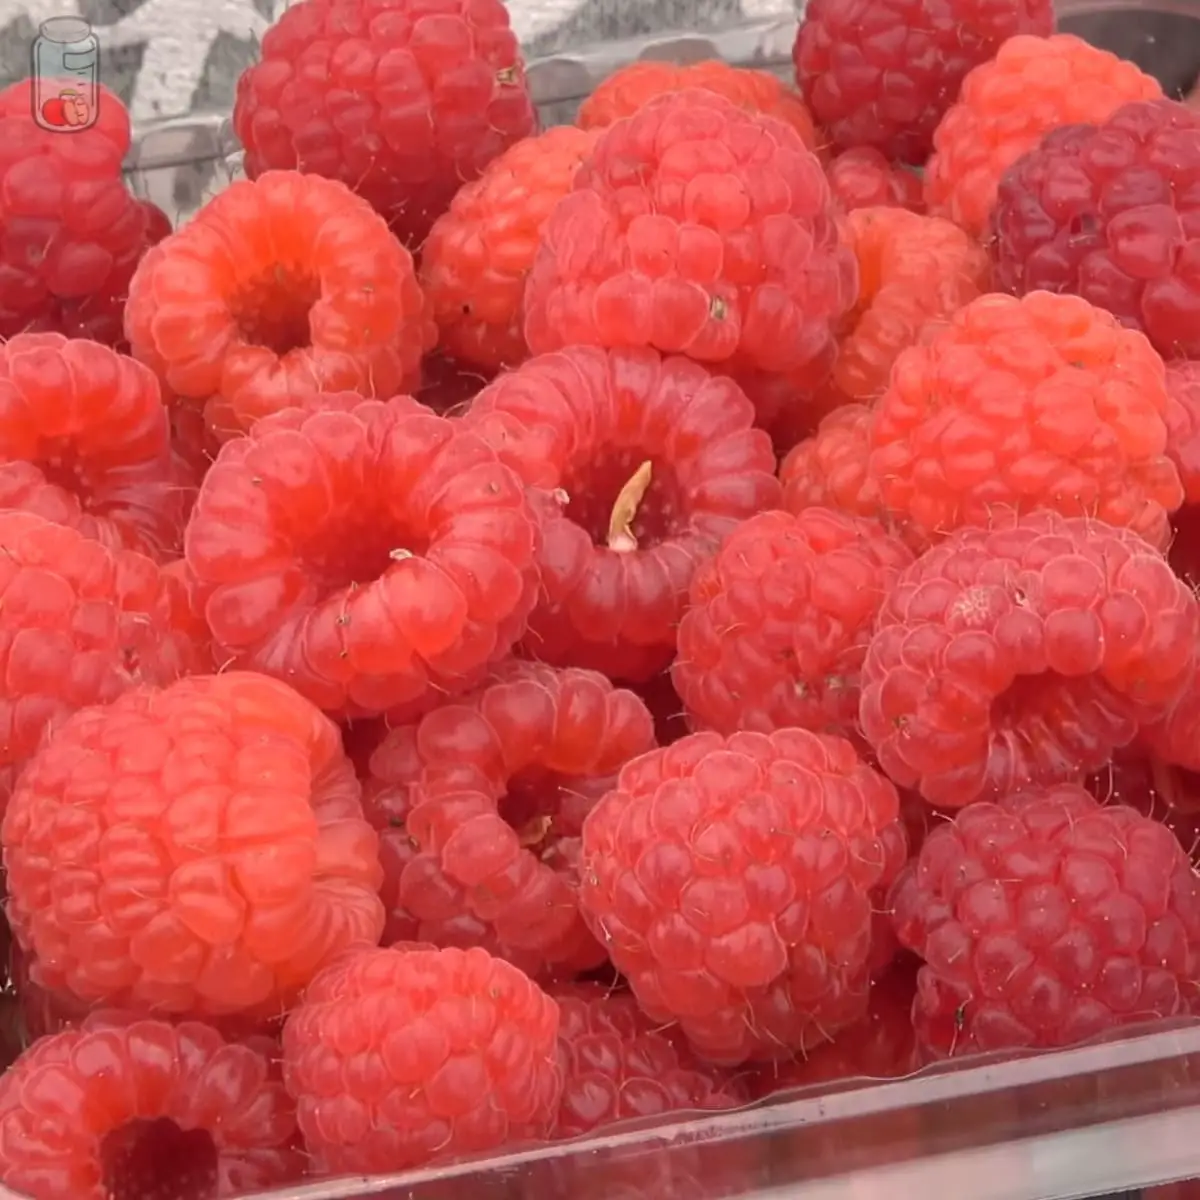 Store Raspberries